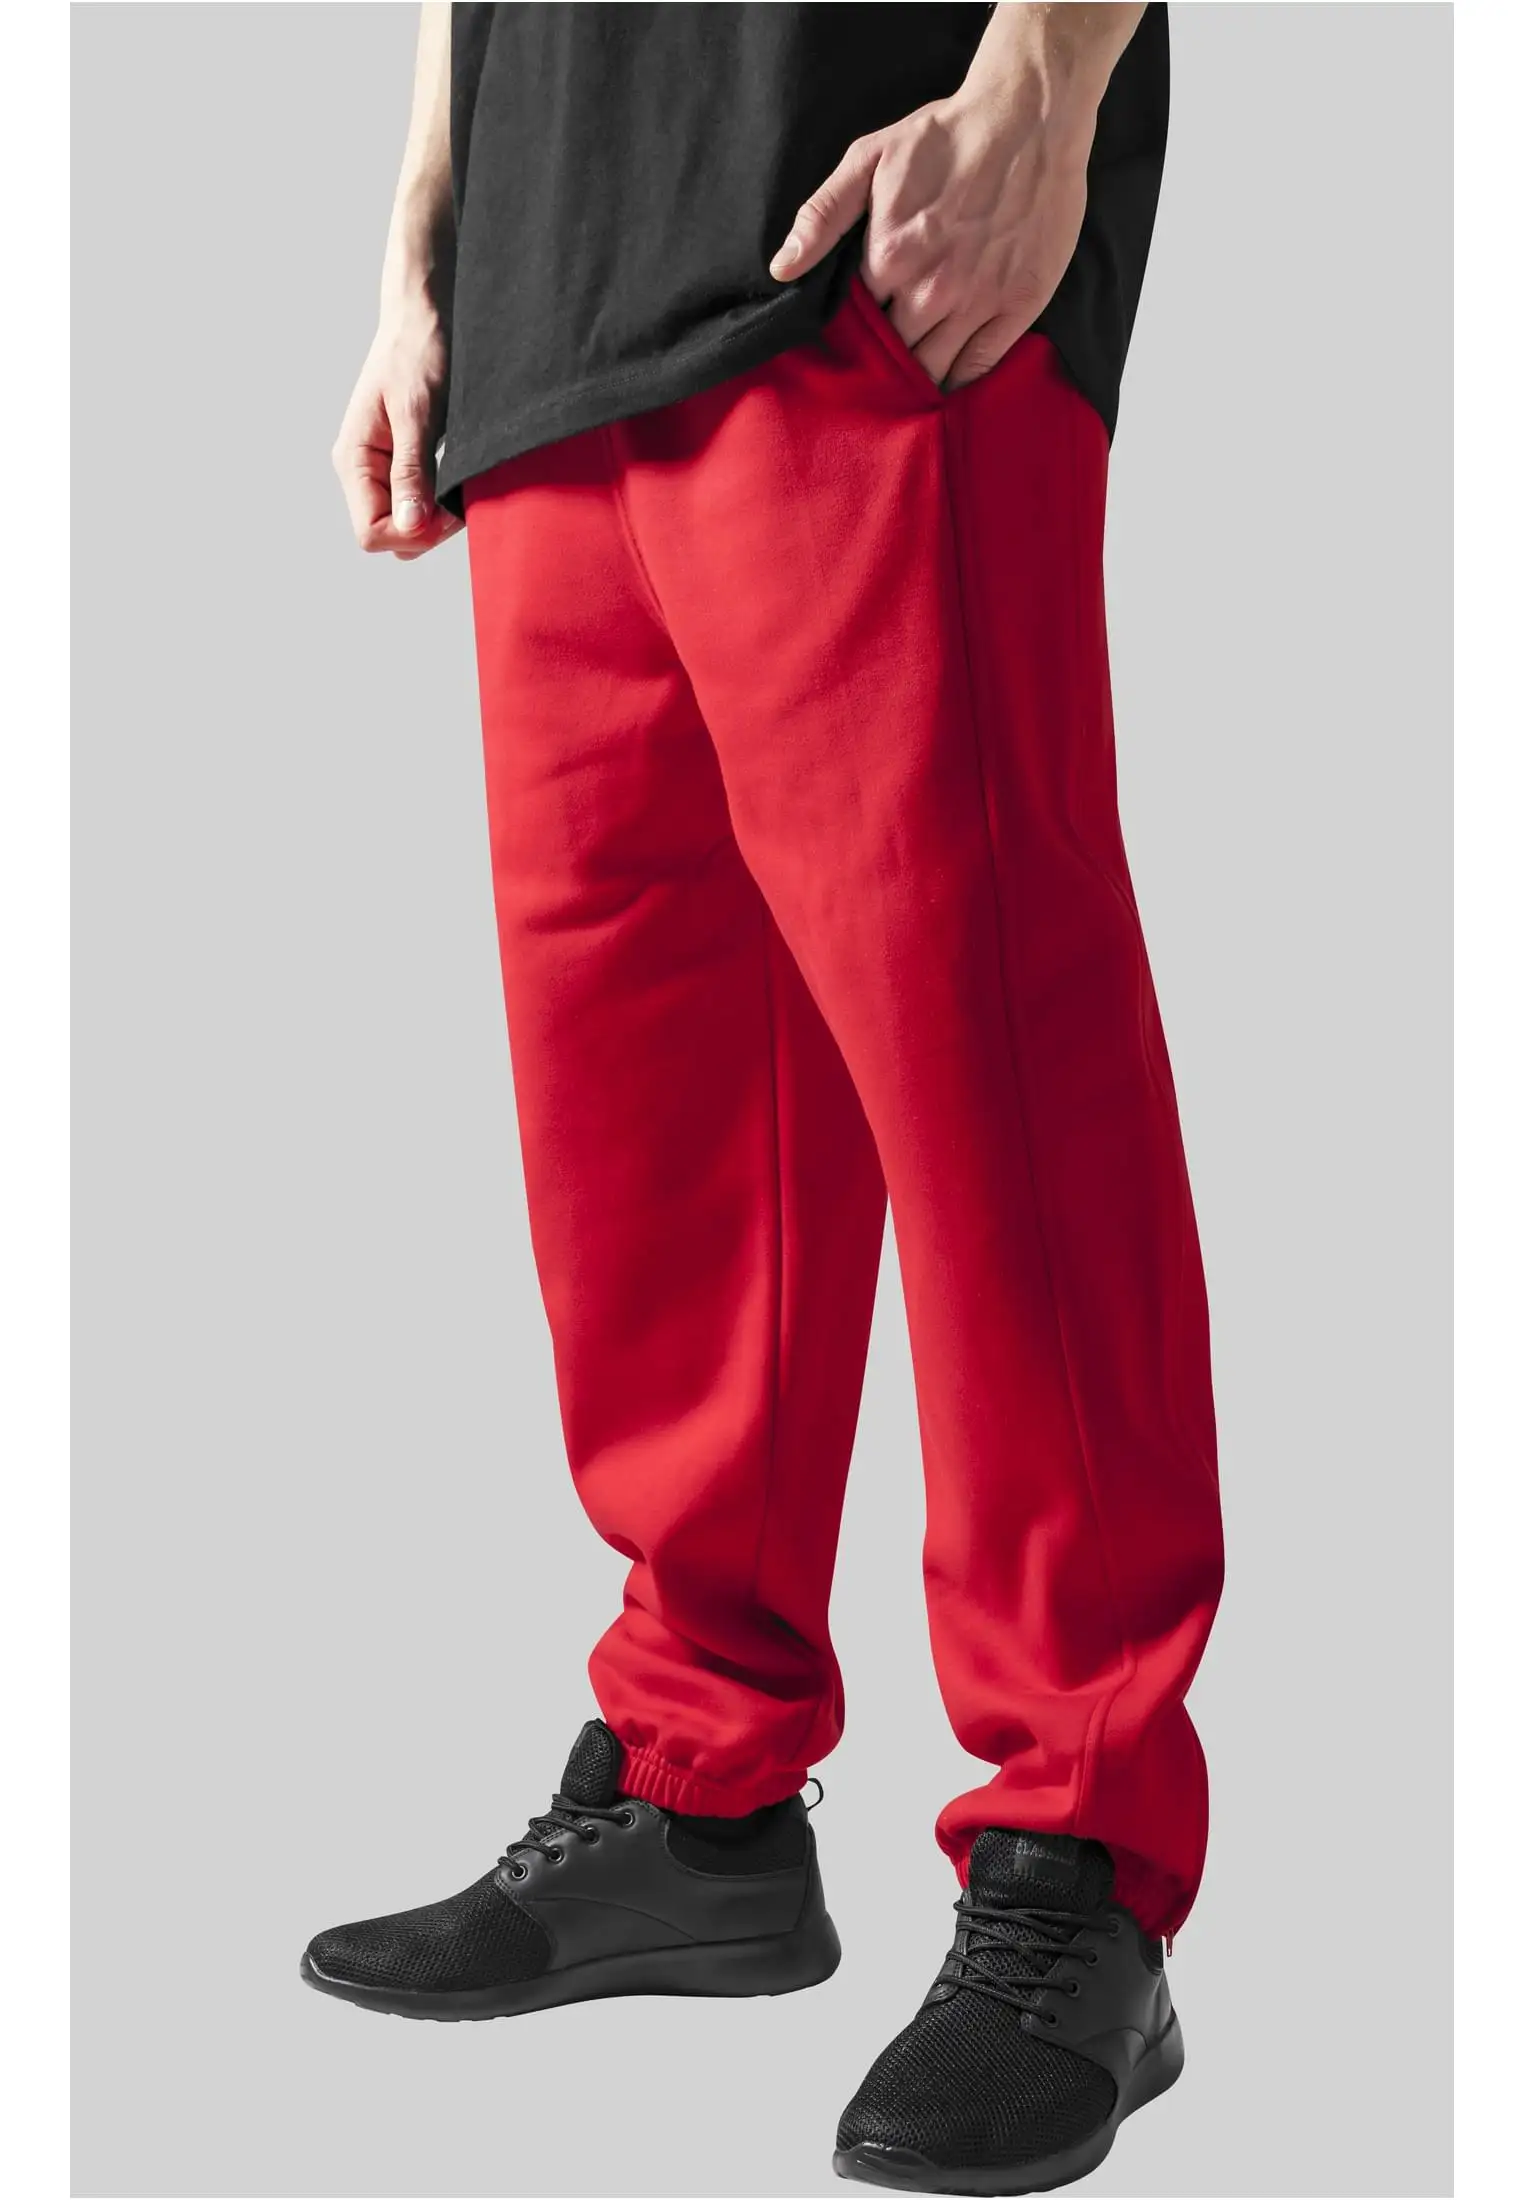 पुरुषों के लिए भारी 360 ग्राम कॉटन स्पोर्ट पैंट कैजुअल स्पोर्ट कस्टम पैंट लेबल सेवा इटली में निर्मित उच्च गुणवत्ता वाले स्पोर्ट पैंट